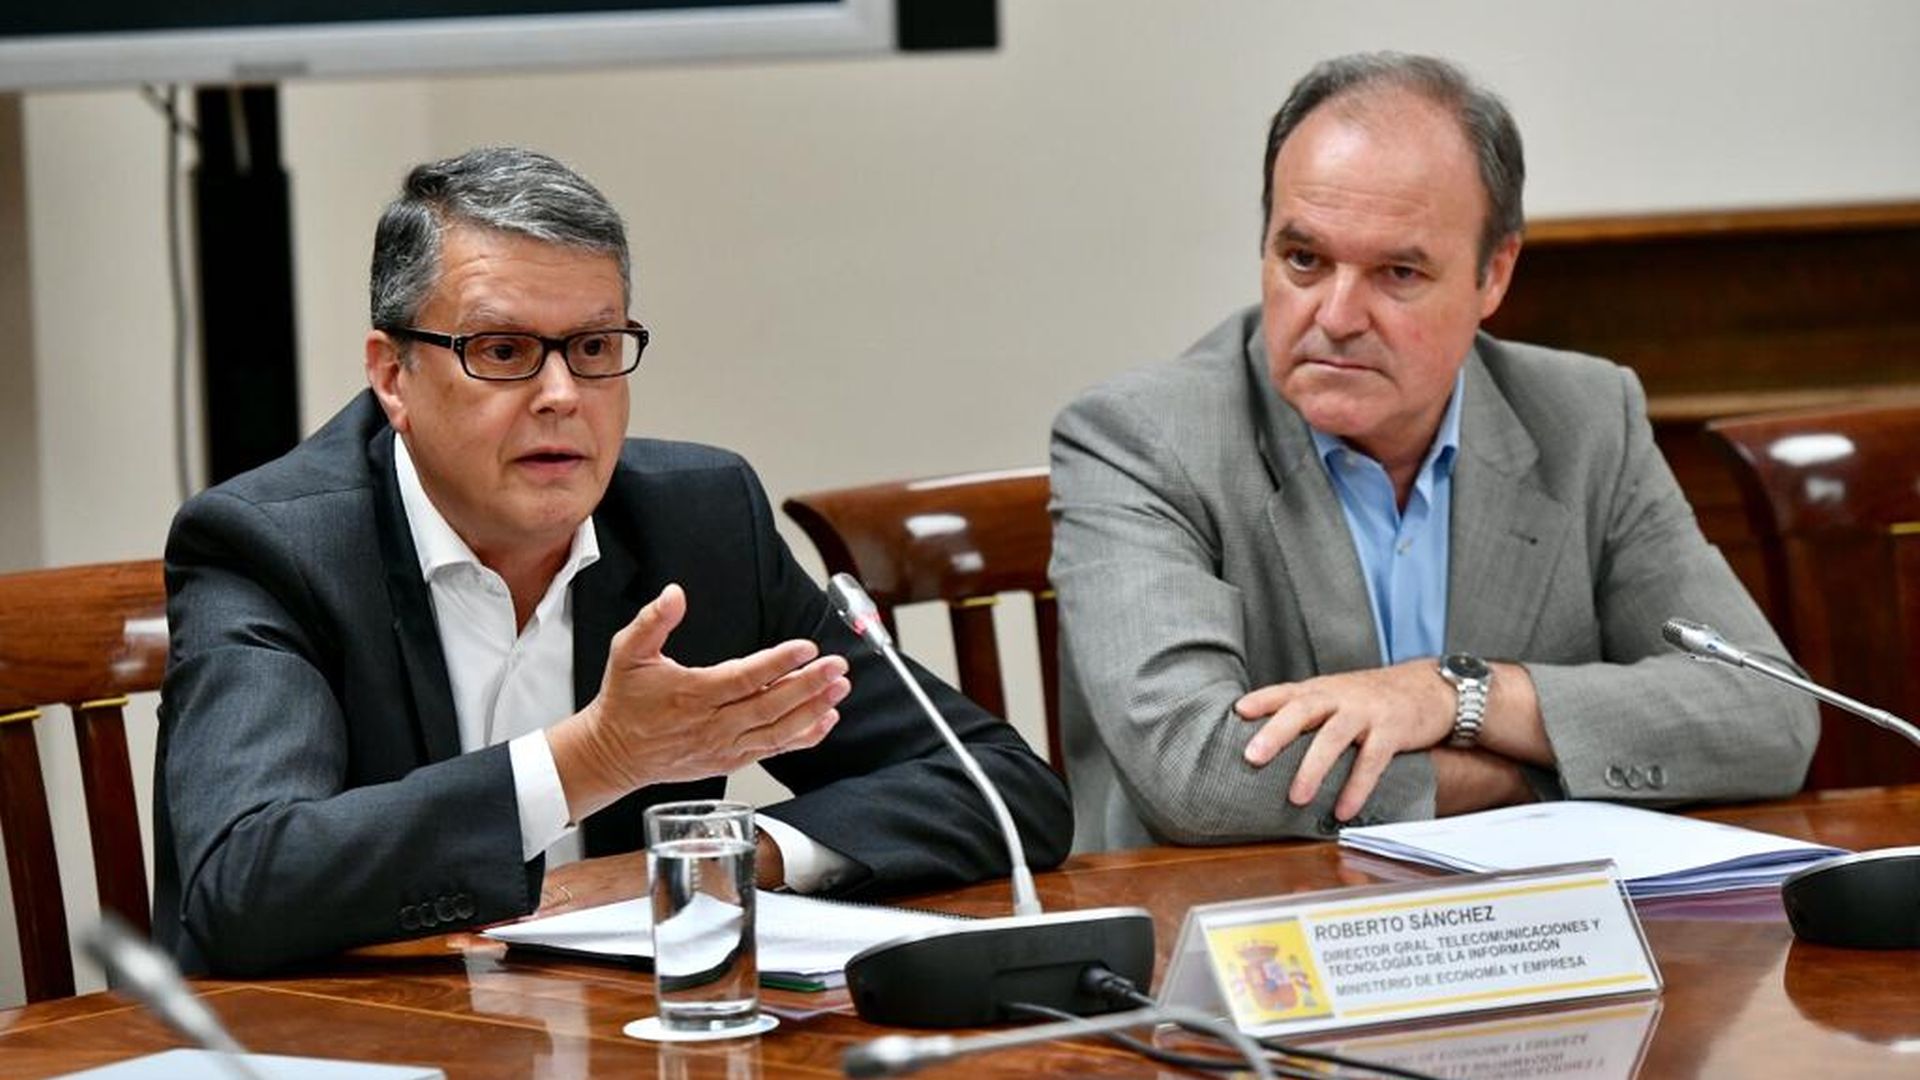 Roberto Sánchez, director general de telecomunicaciones